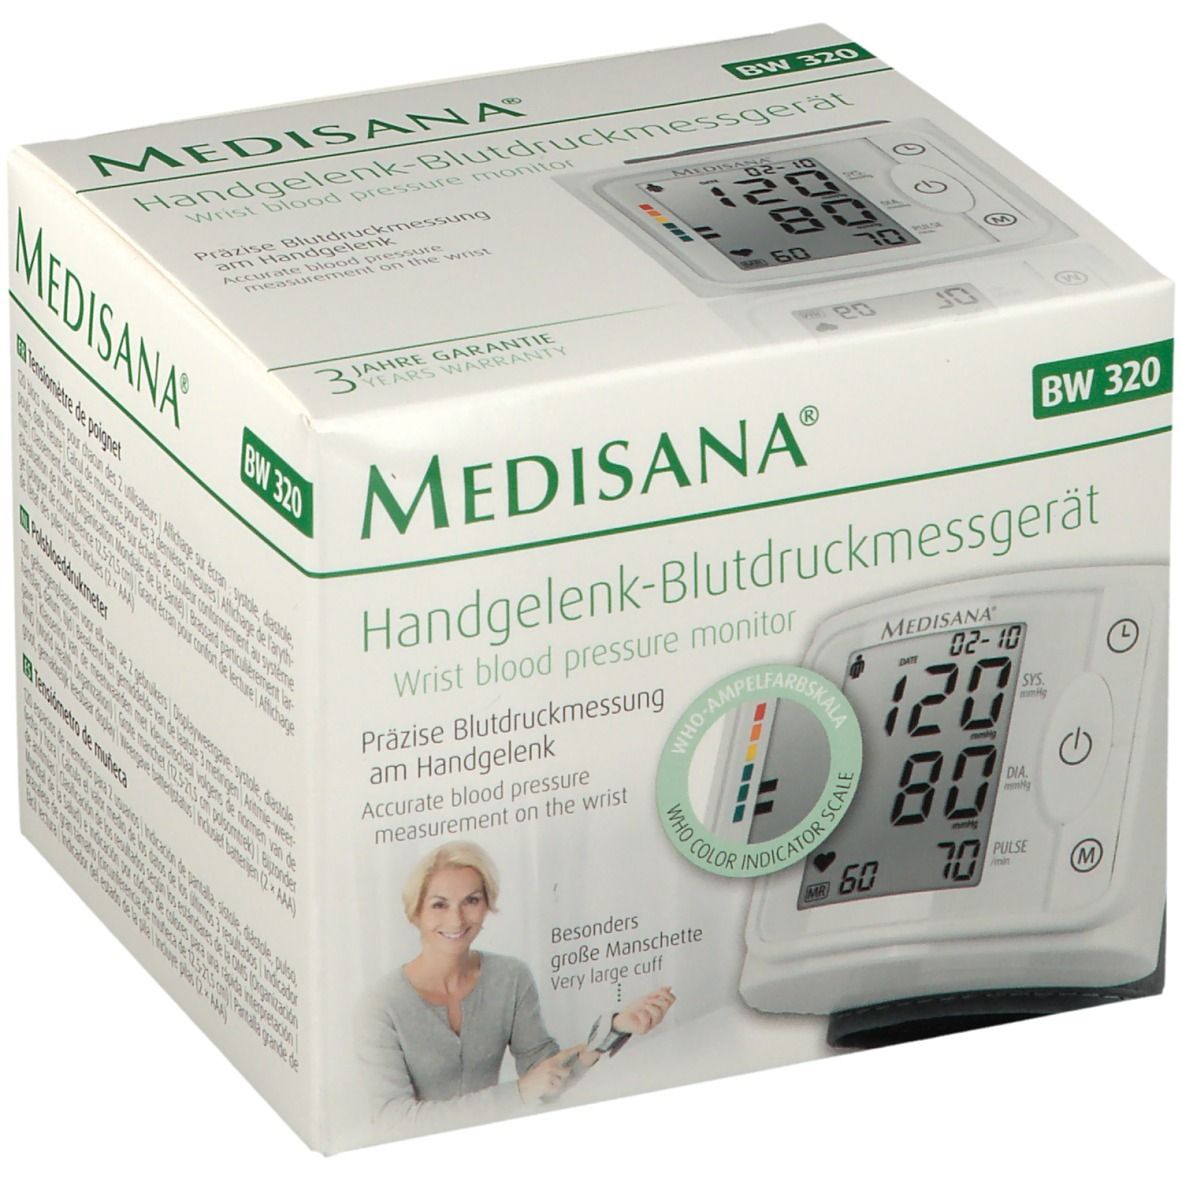 St 1 Medisana 320 - Apotheke BW Handgelenk-Blutdruckmessgerät Redcare